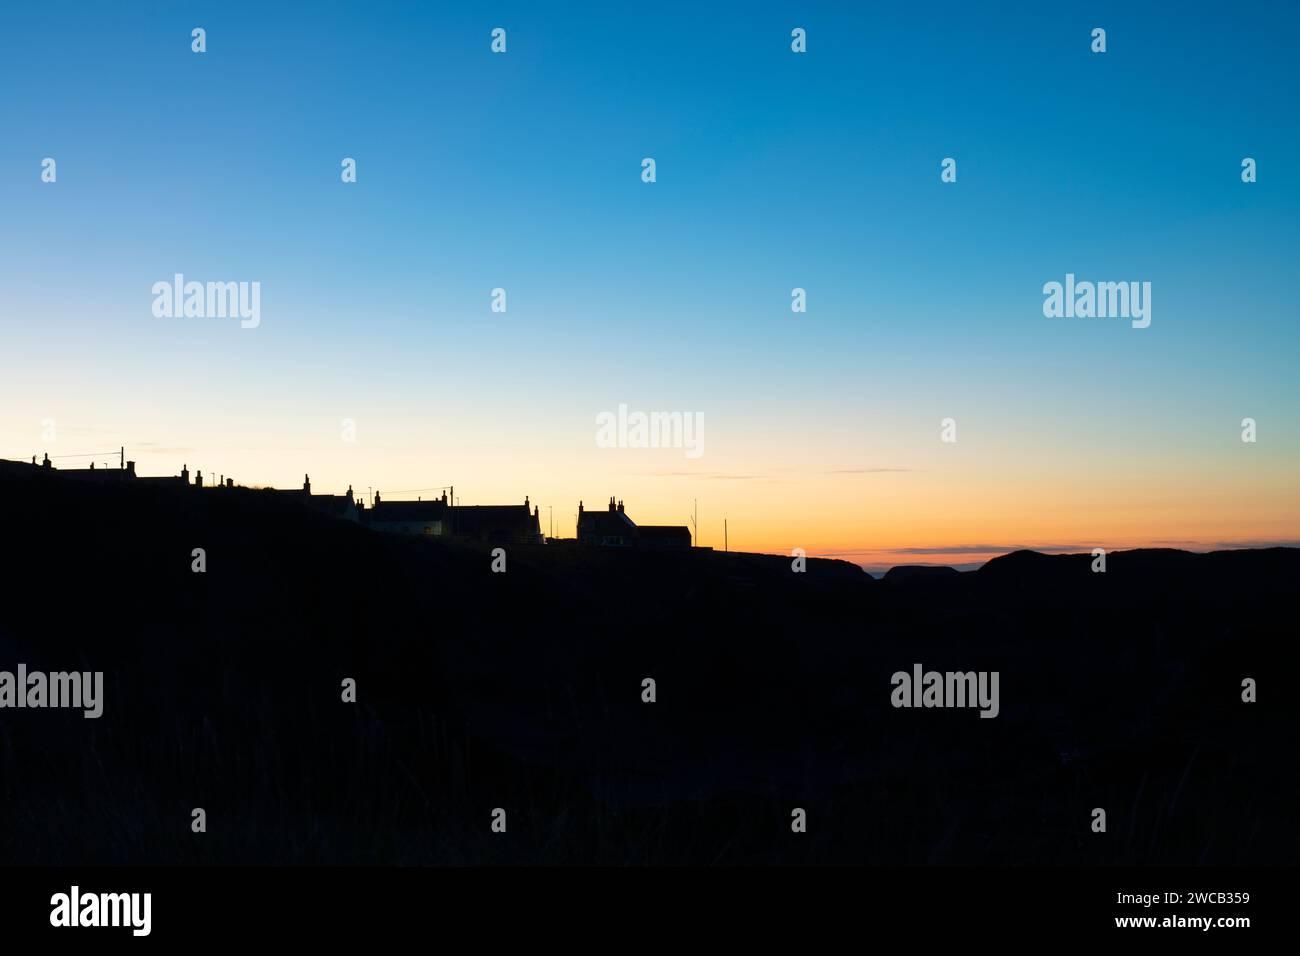 Silhouette ospita i tetti al crepuscolo. Portknockie, Morayshire, Scozia. Foto Stock